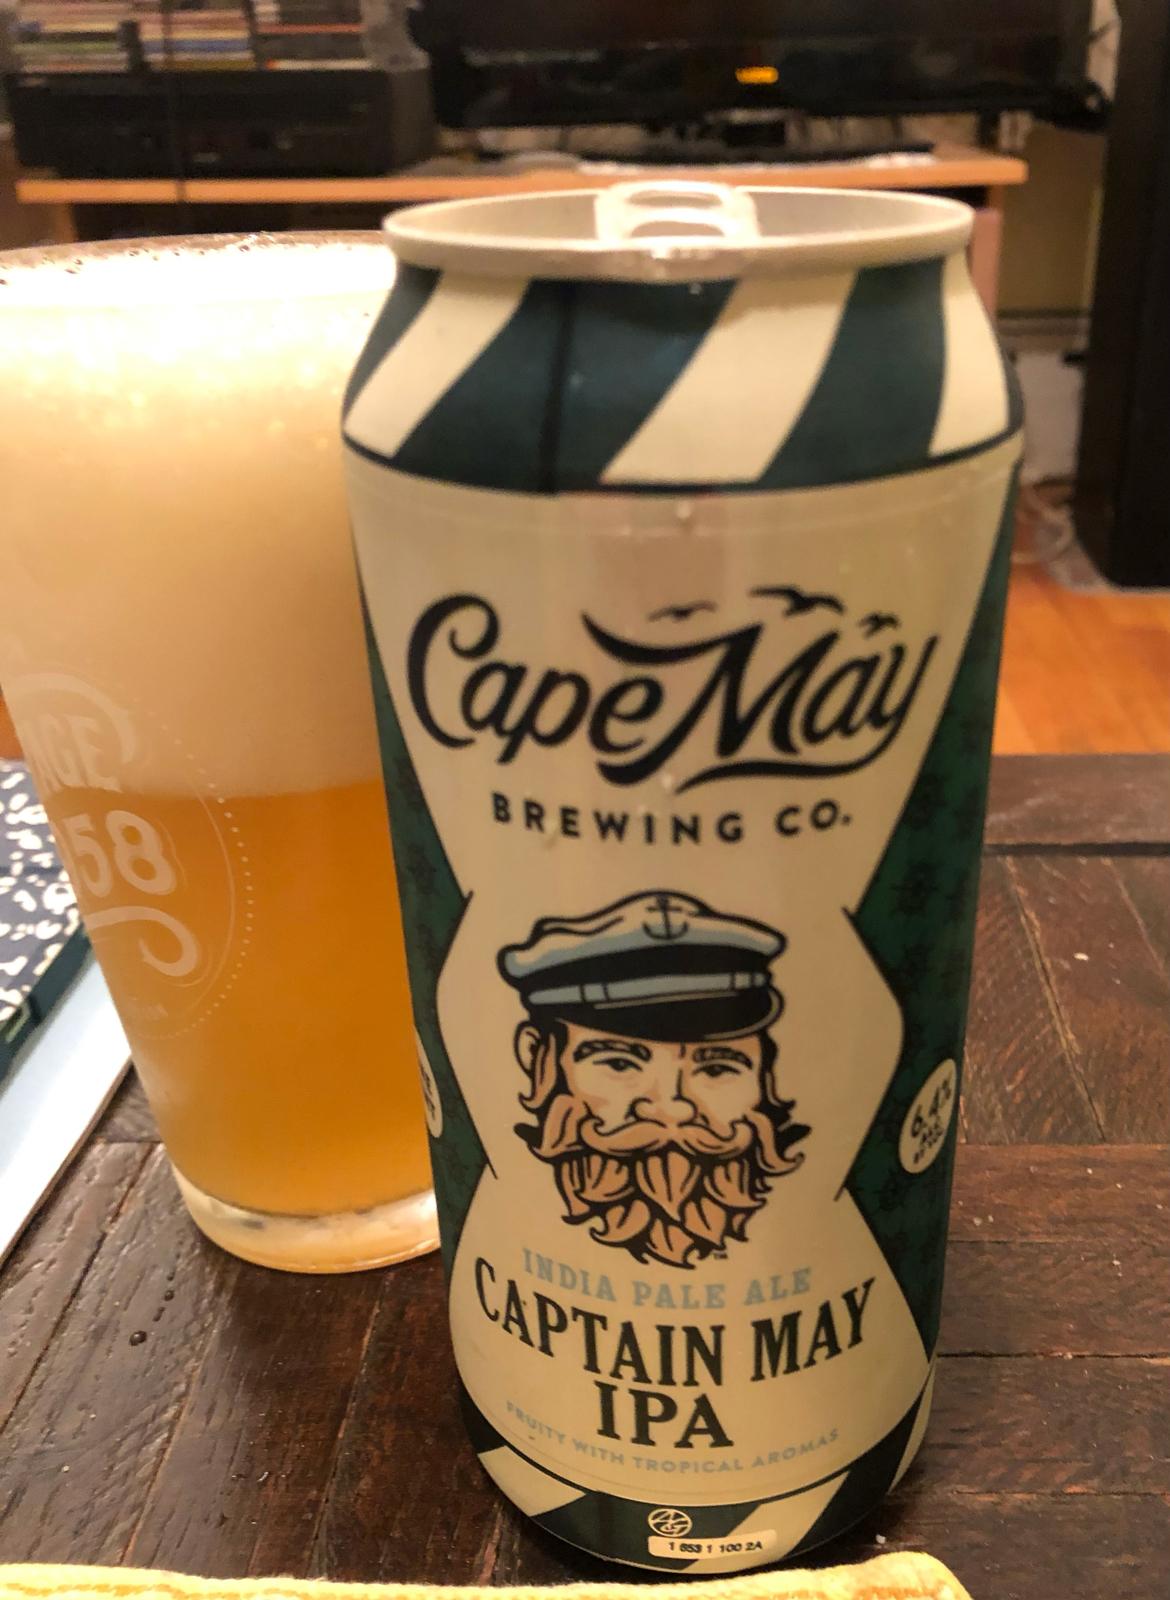 Captain May IPA